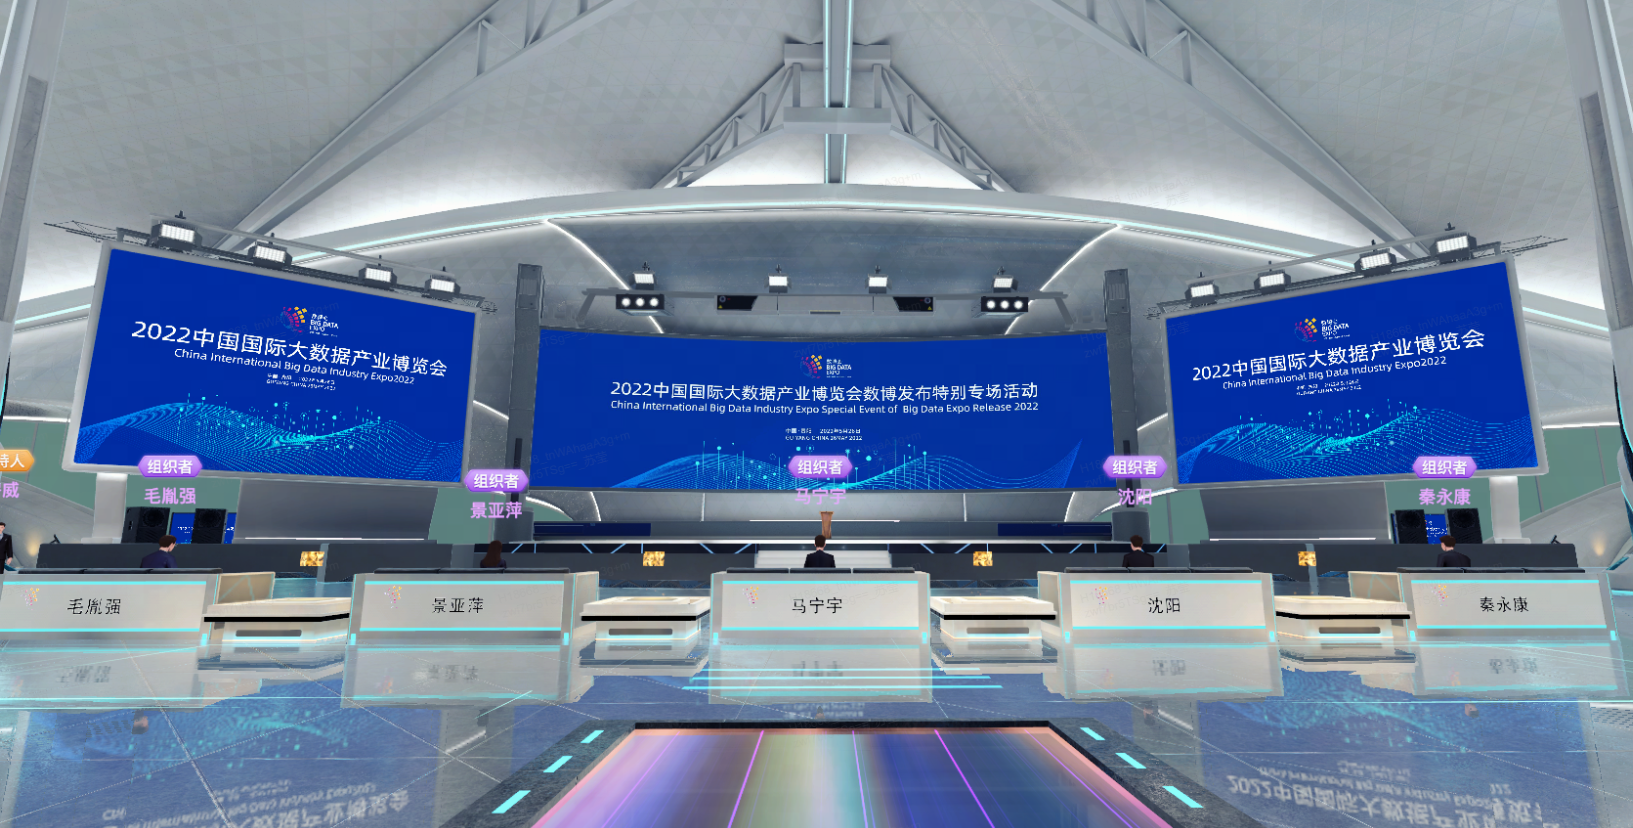 这是一张展示现代会议中心内部的图片，有多个显示屏展示2022年信息，前方设有整齐排列的接待台。